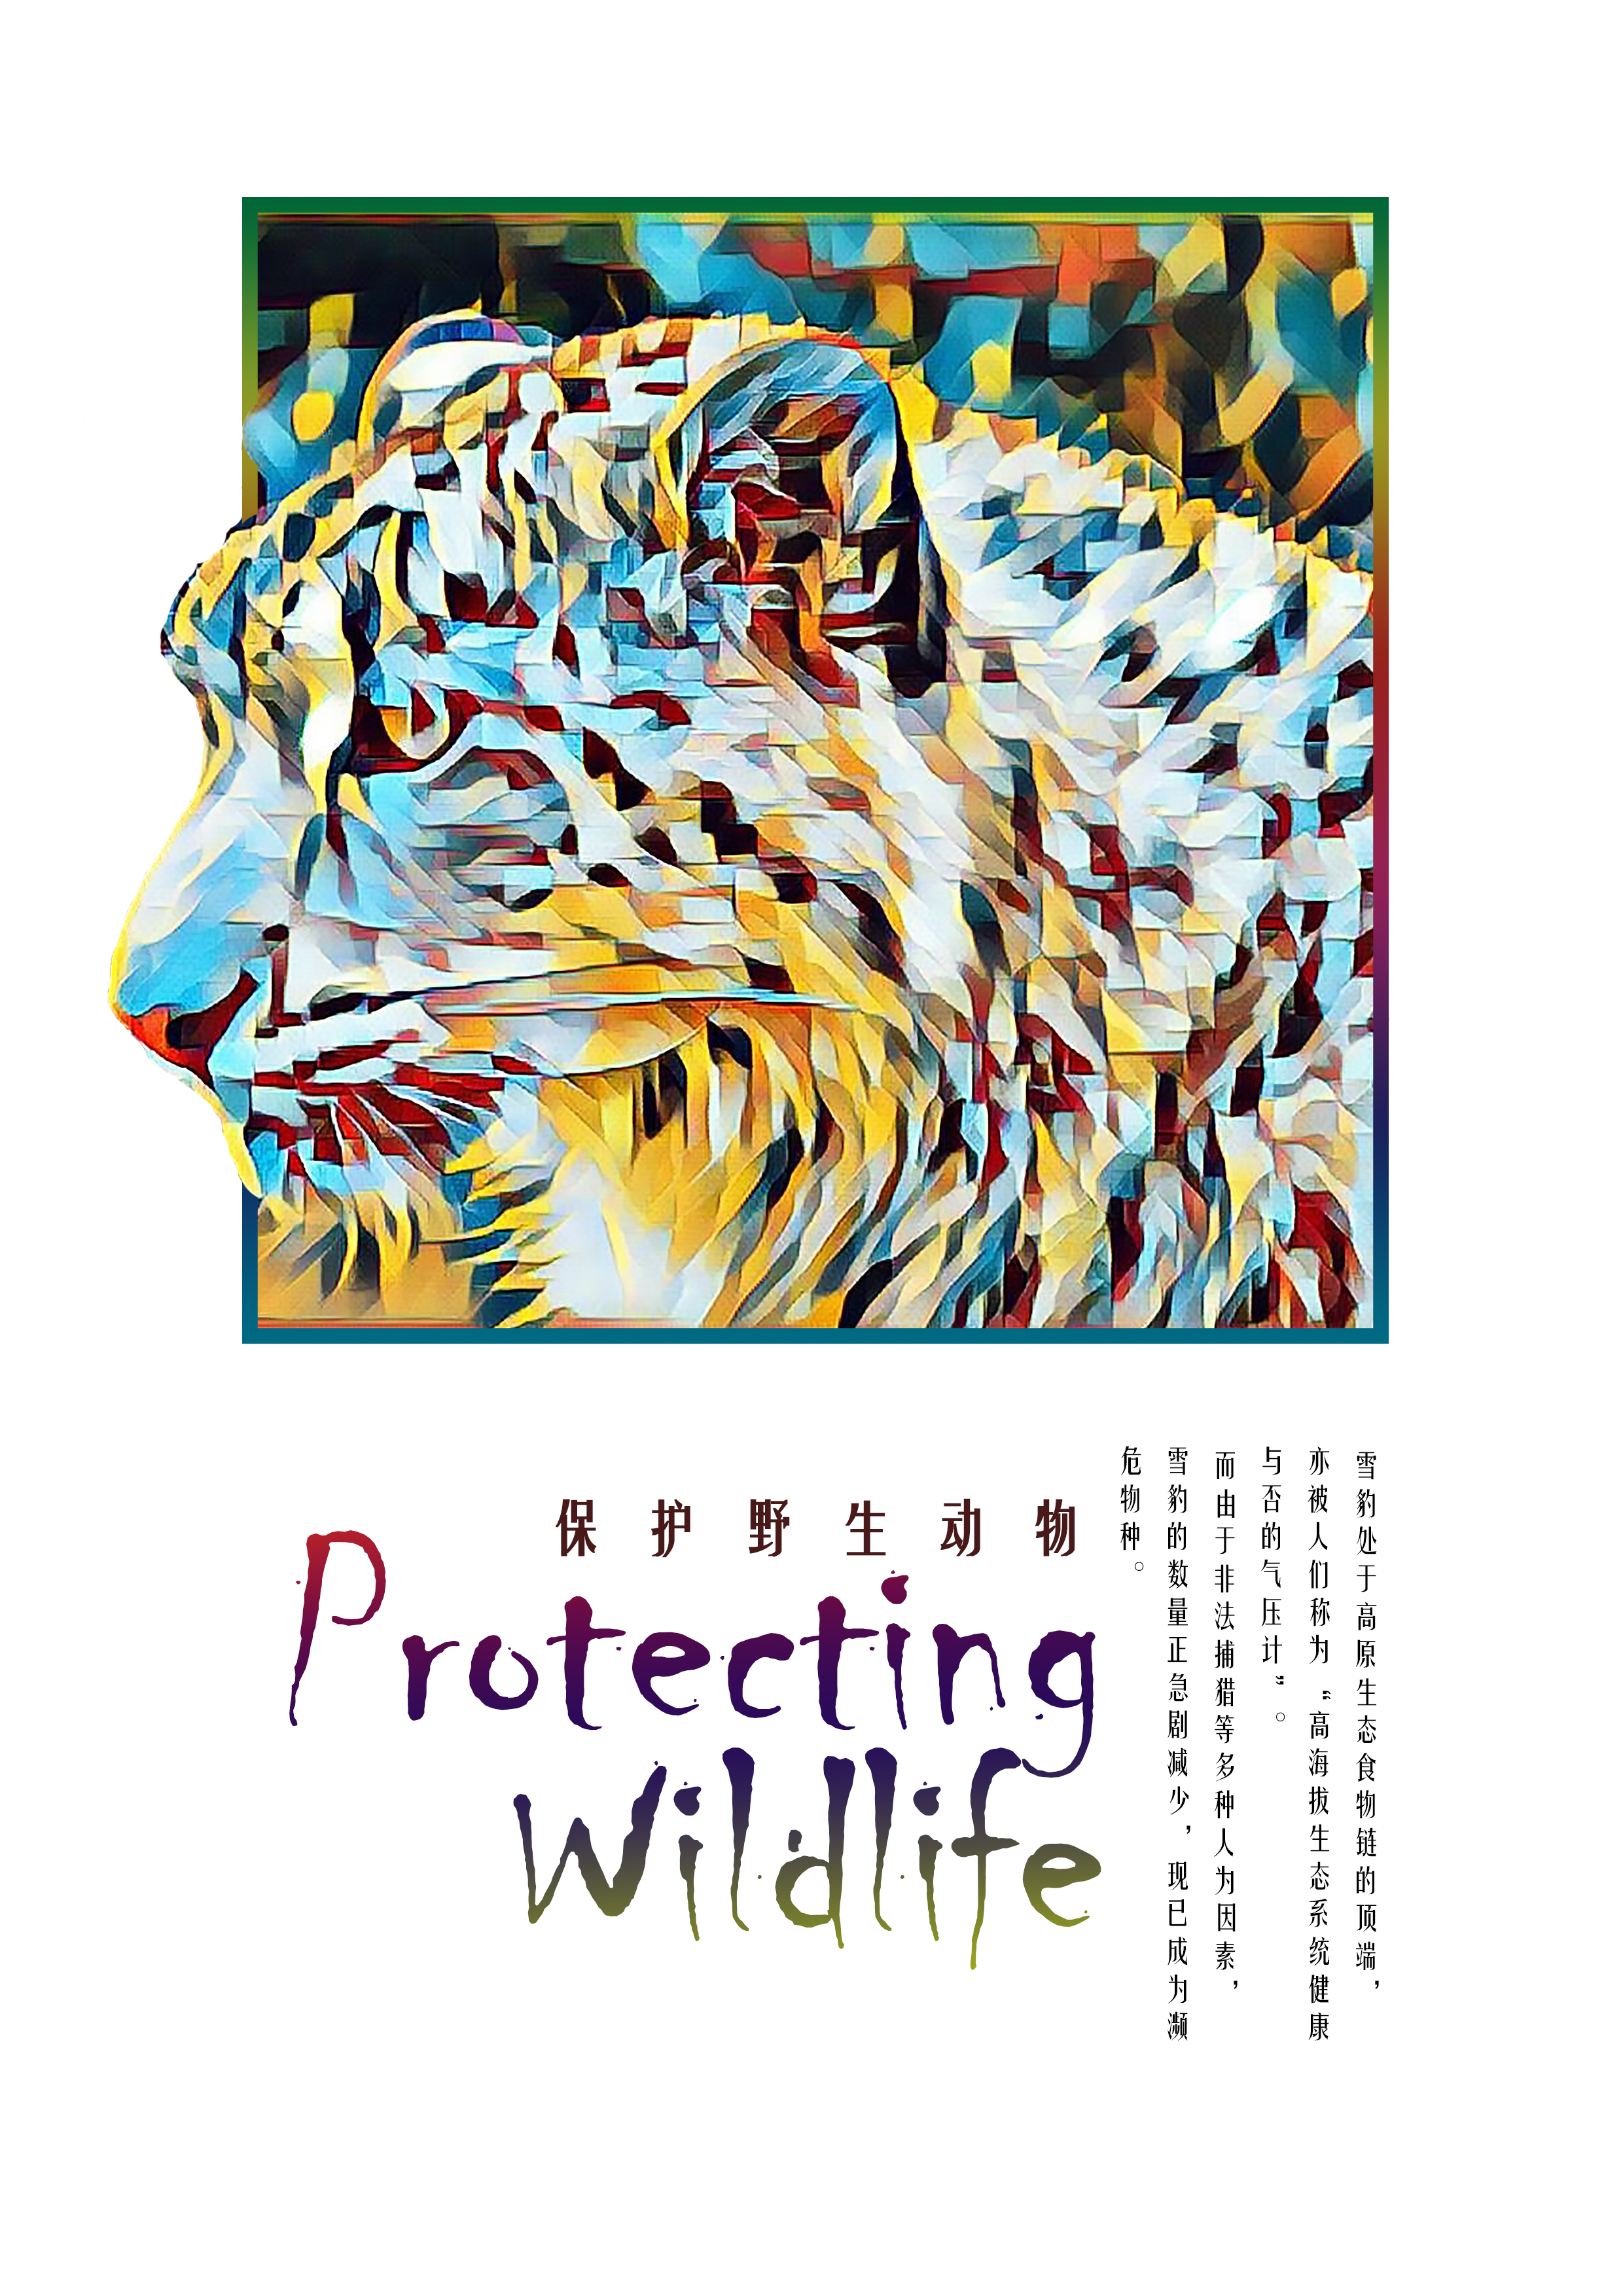 国家保护动物海报图片